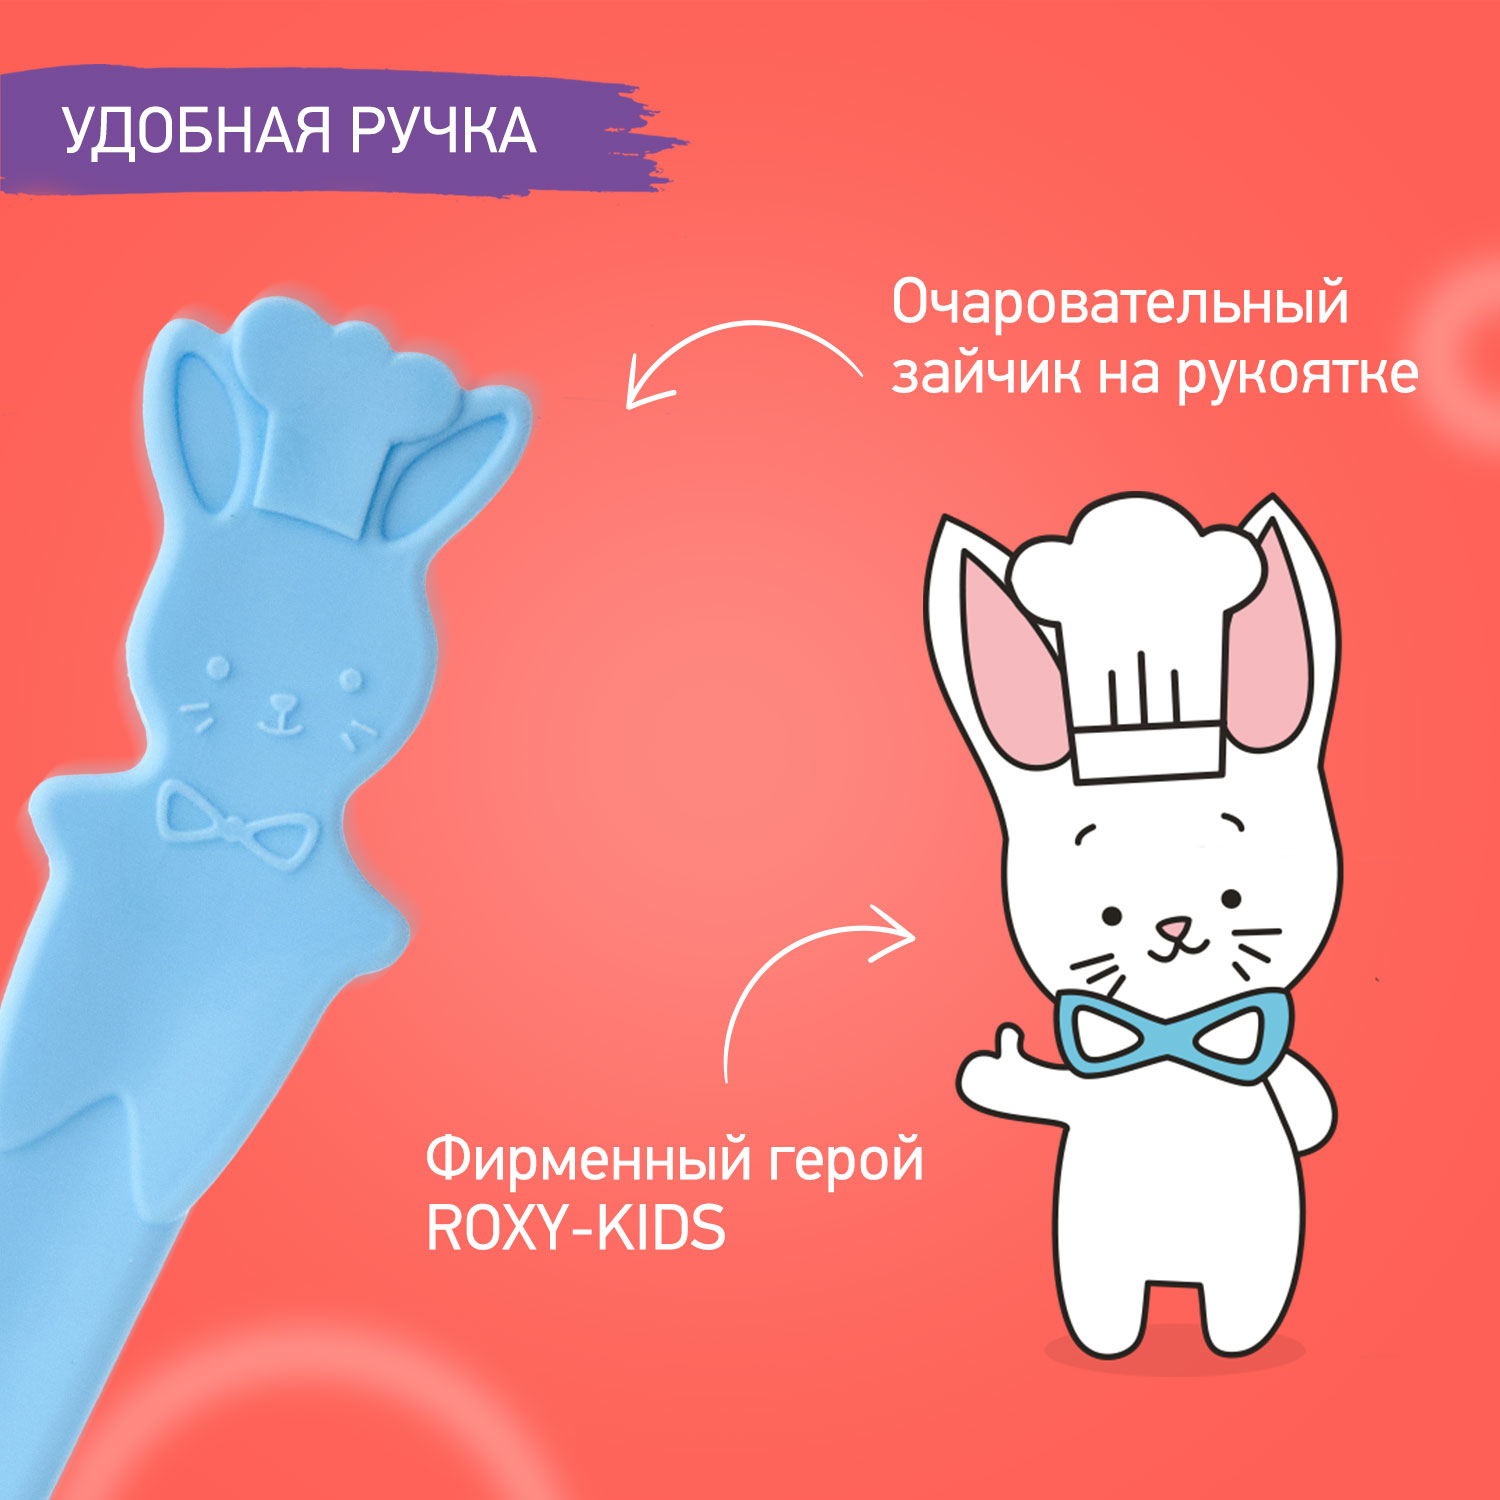 Набор ложек ROXY-KIDS для первого прикорма bunny cook цвет голубой - фото 6